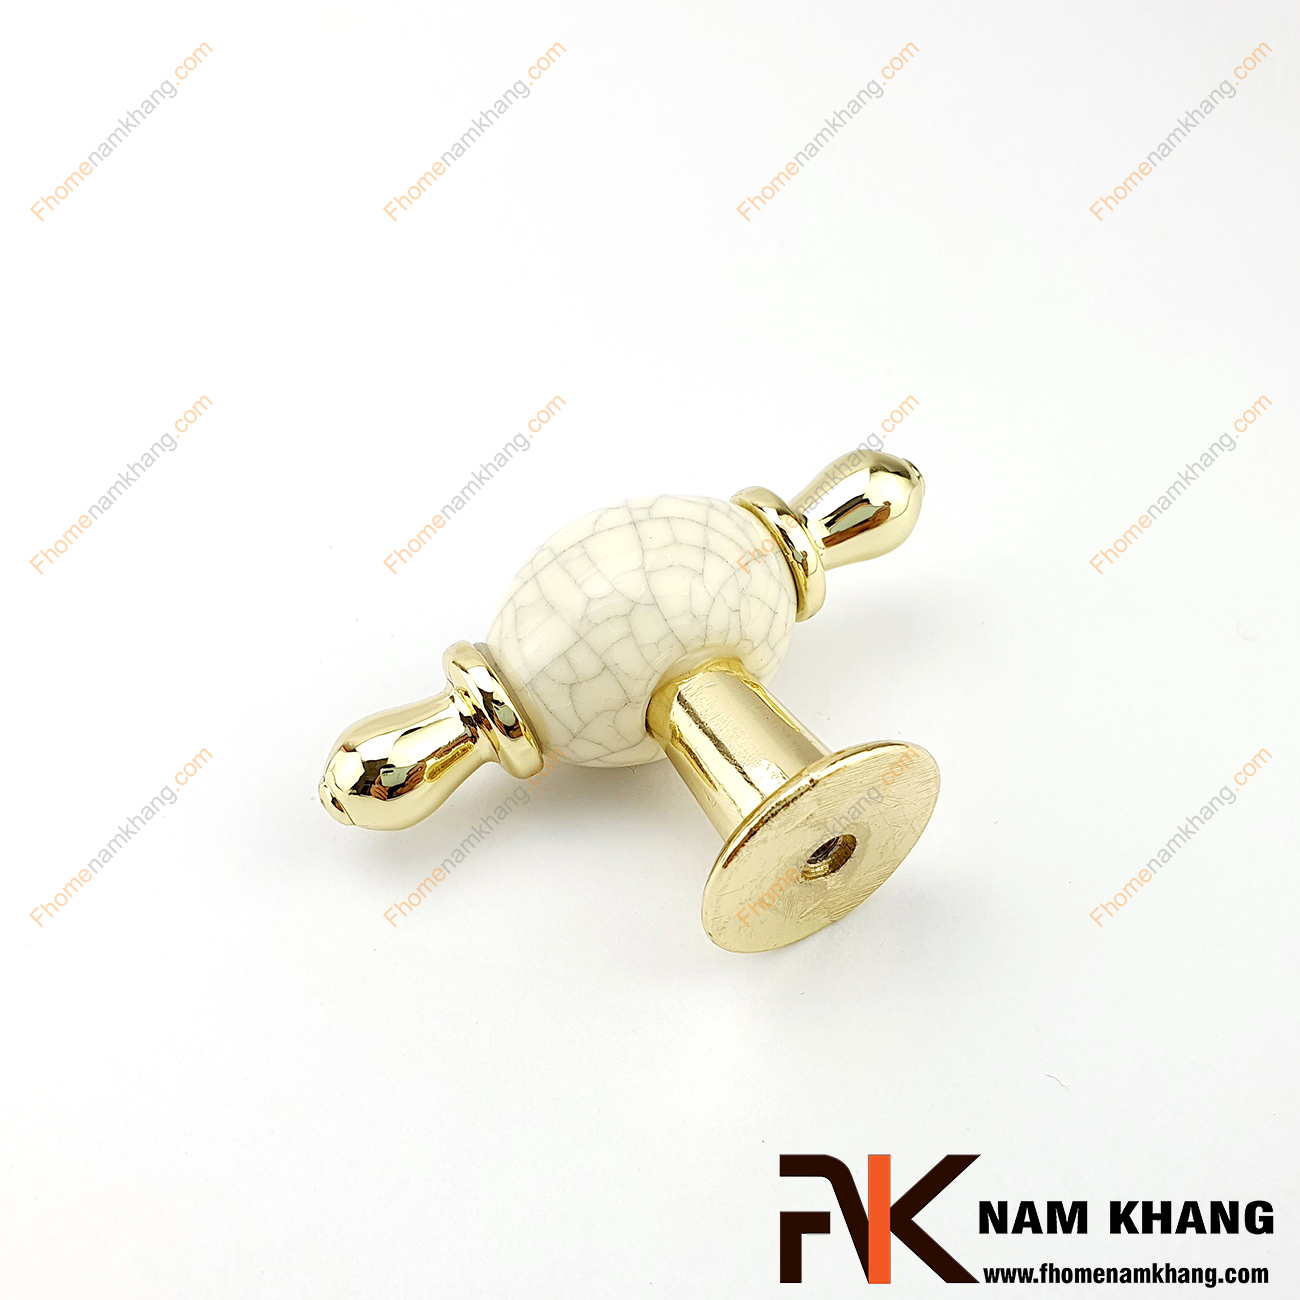 Núm cửa tủ dạng tròn sứ vân viền vàng NK329-VC có thiết kế khá đơn giản từ hợp kim mạ vàng bọc quanh sứ trắng bóng cao cấp. Khá đơn giản nhưng lại toát lên vẻ ngoài tinh tế và rất sang trọng .